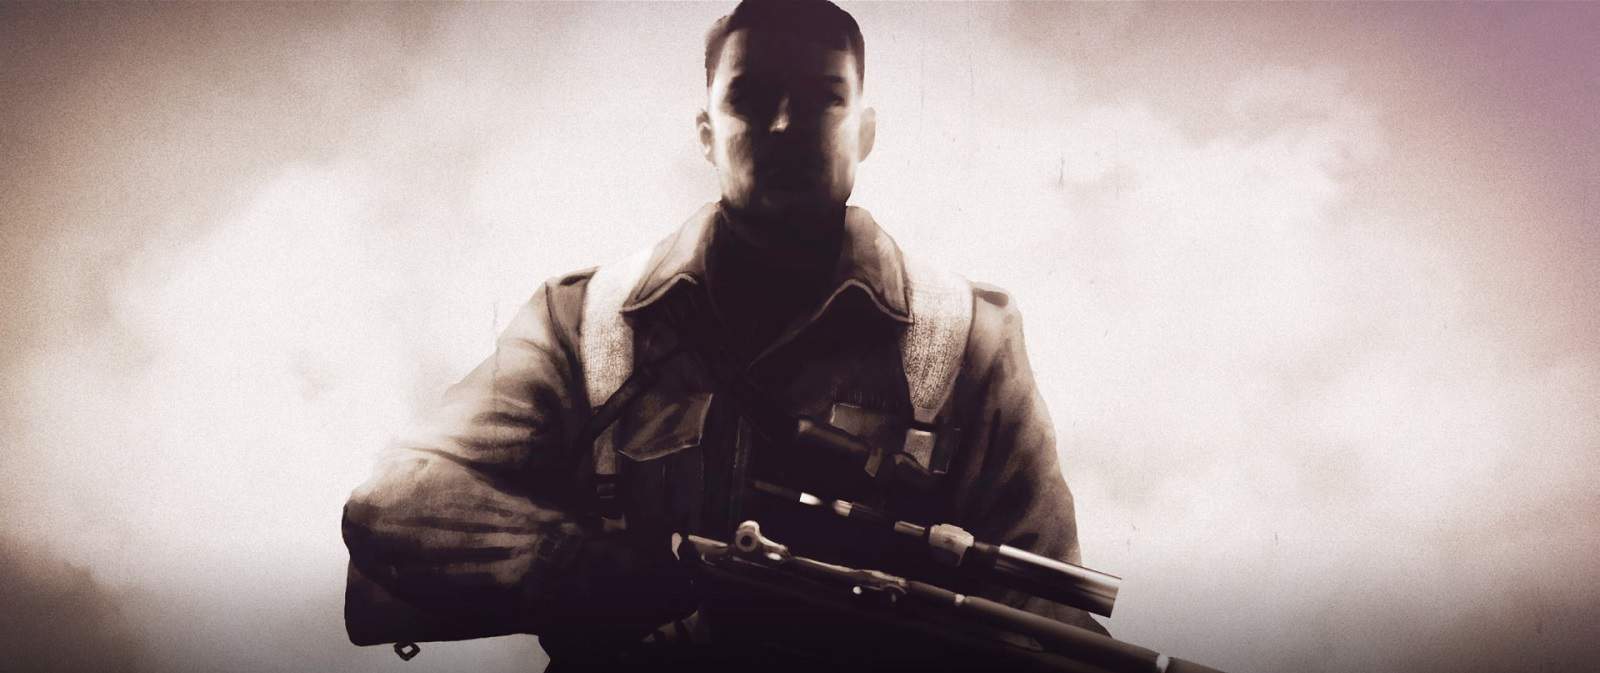 (Läcka) Sniper Elite 5 som mesmo ser lançado em 2020. Mas quando?